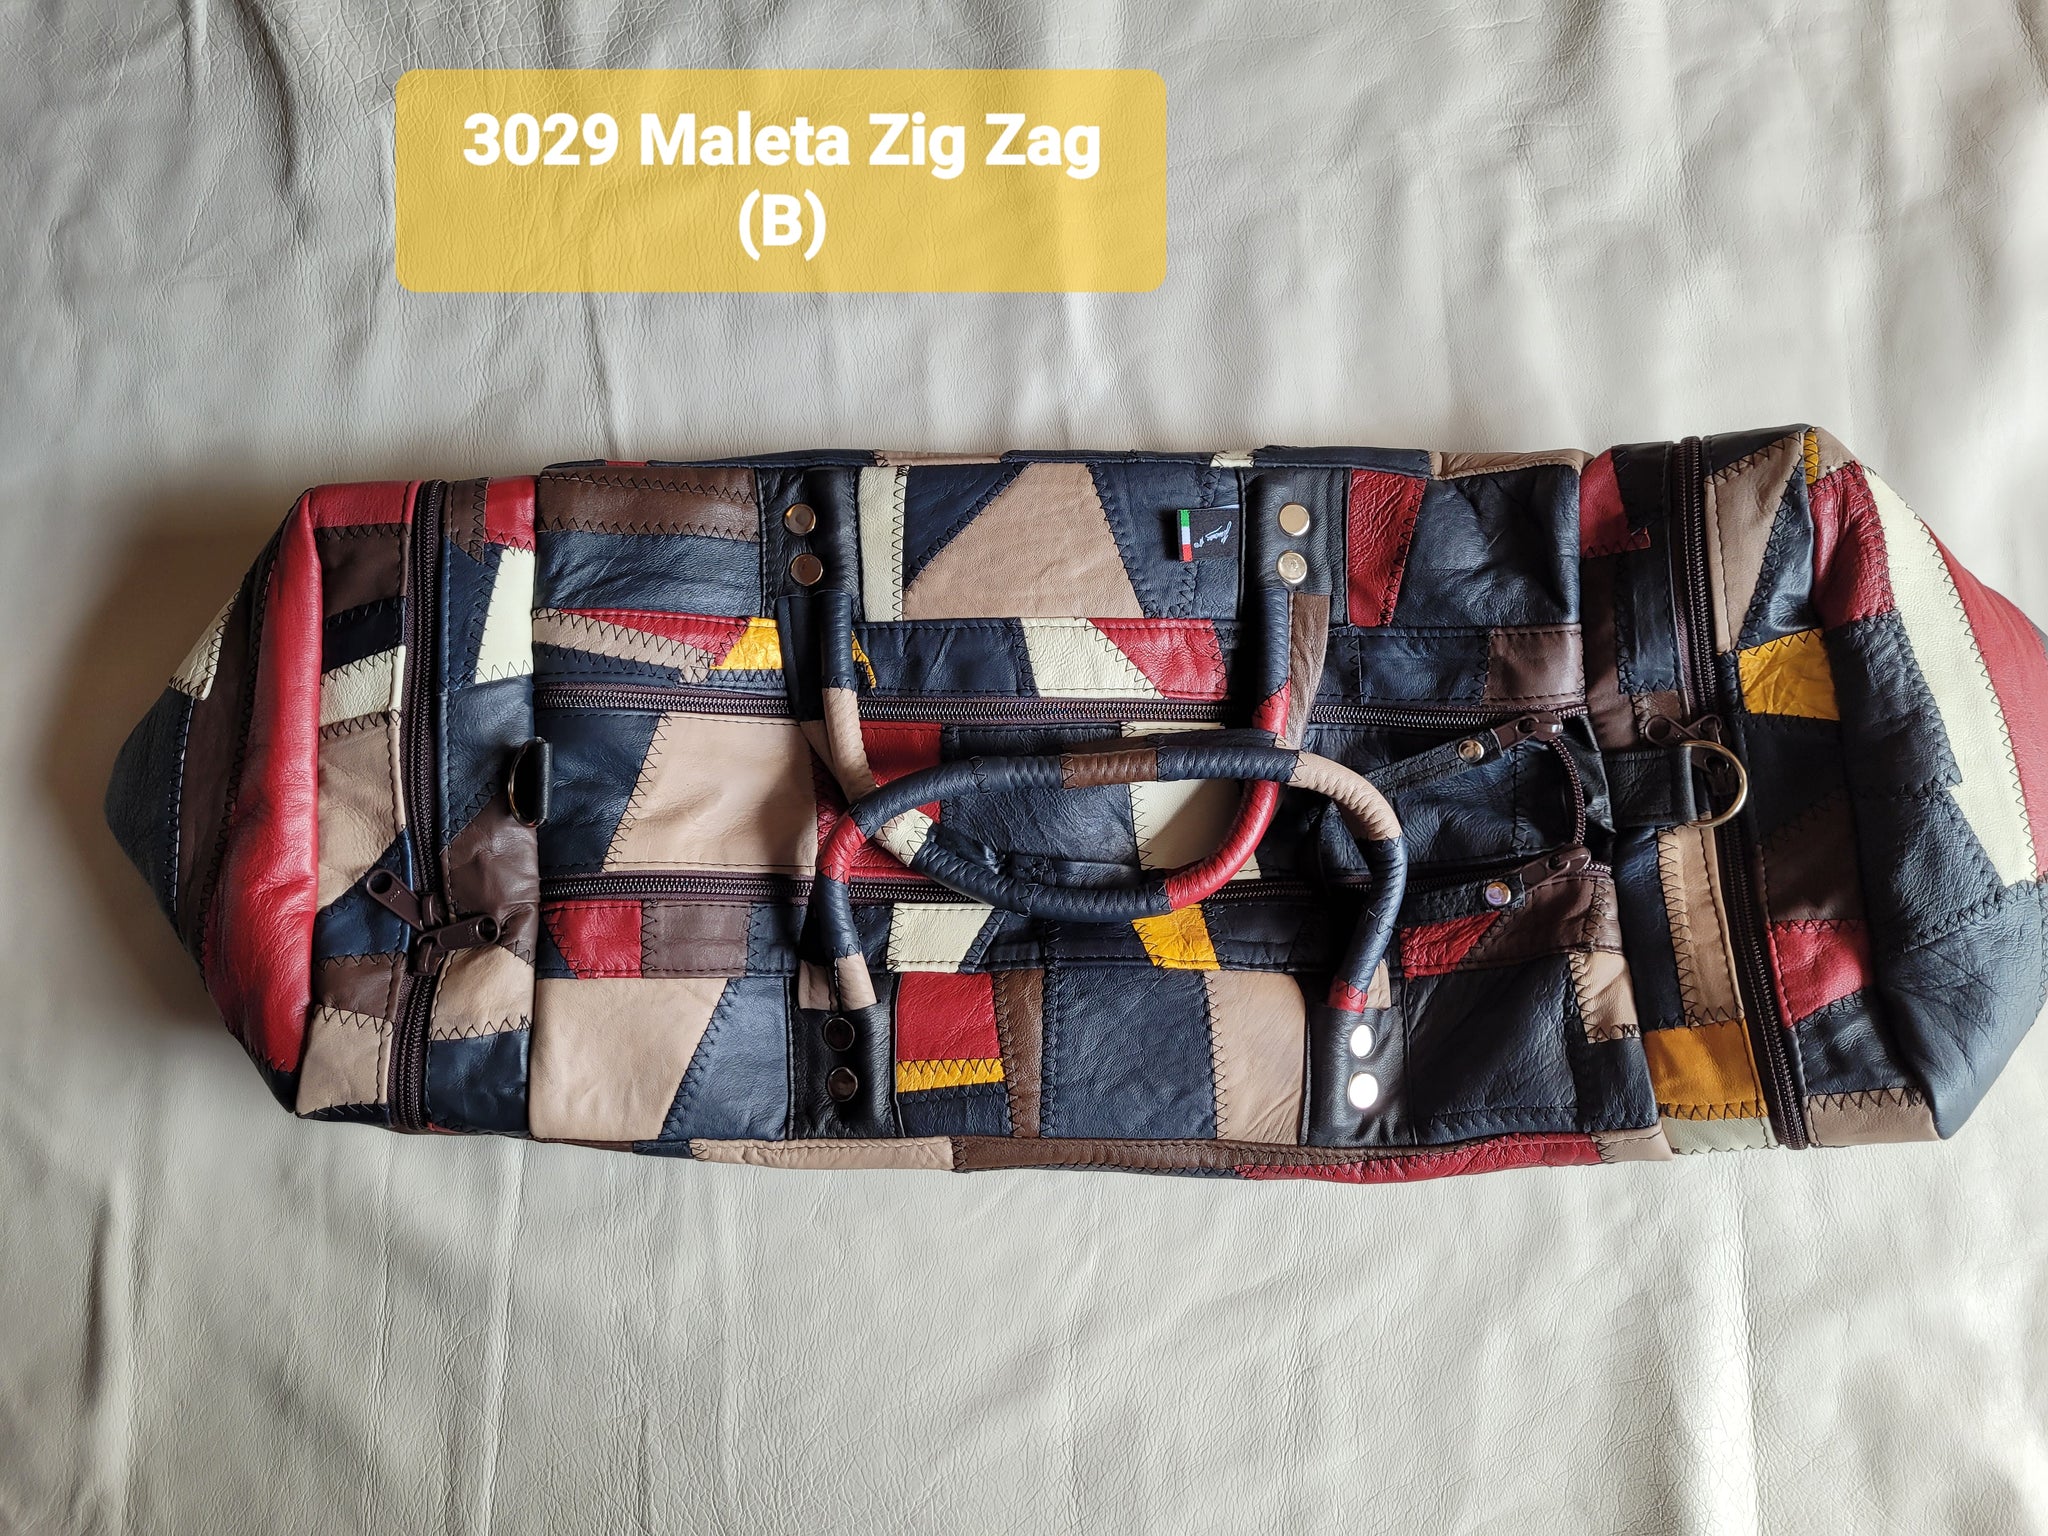 Maleta Zig Zag -3029-